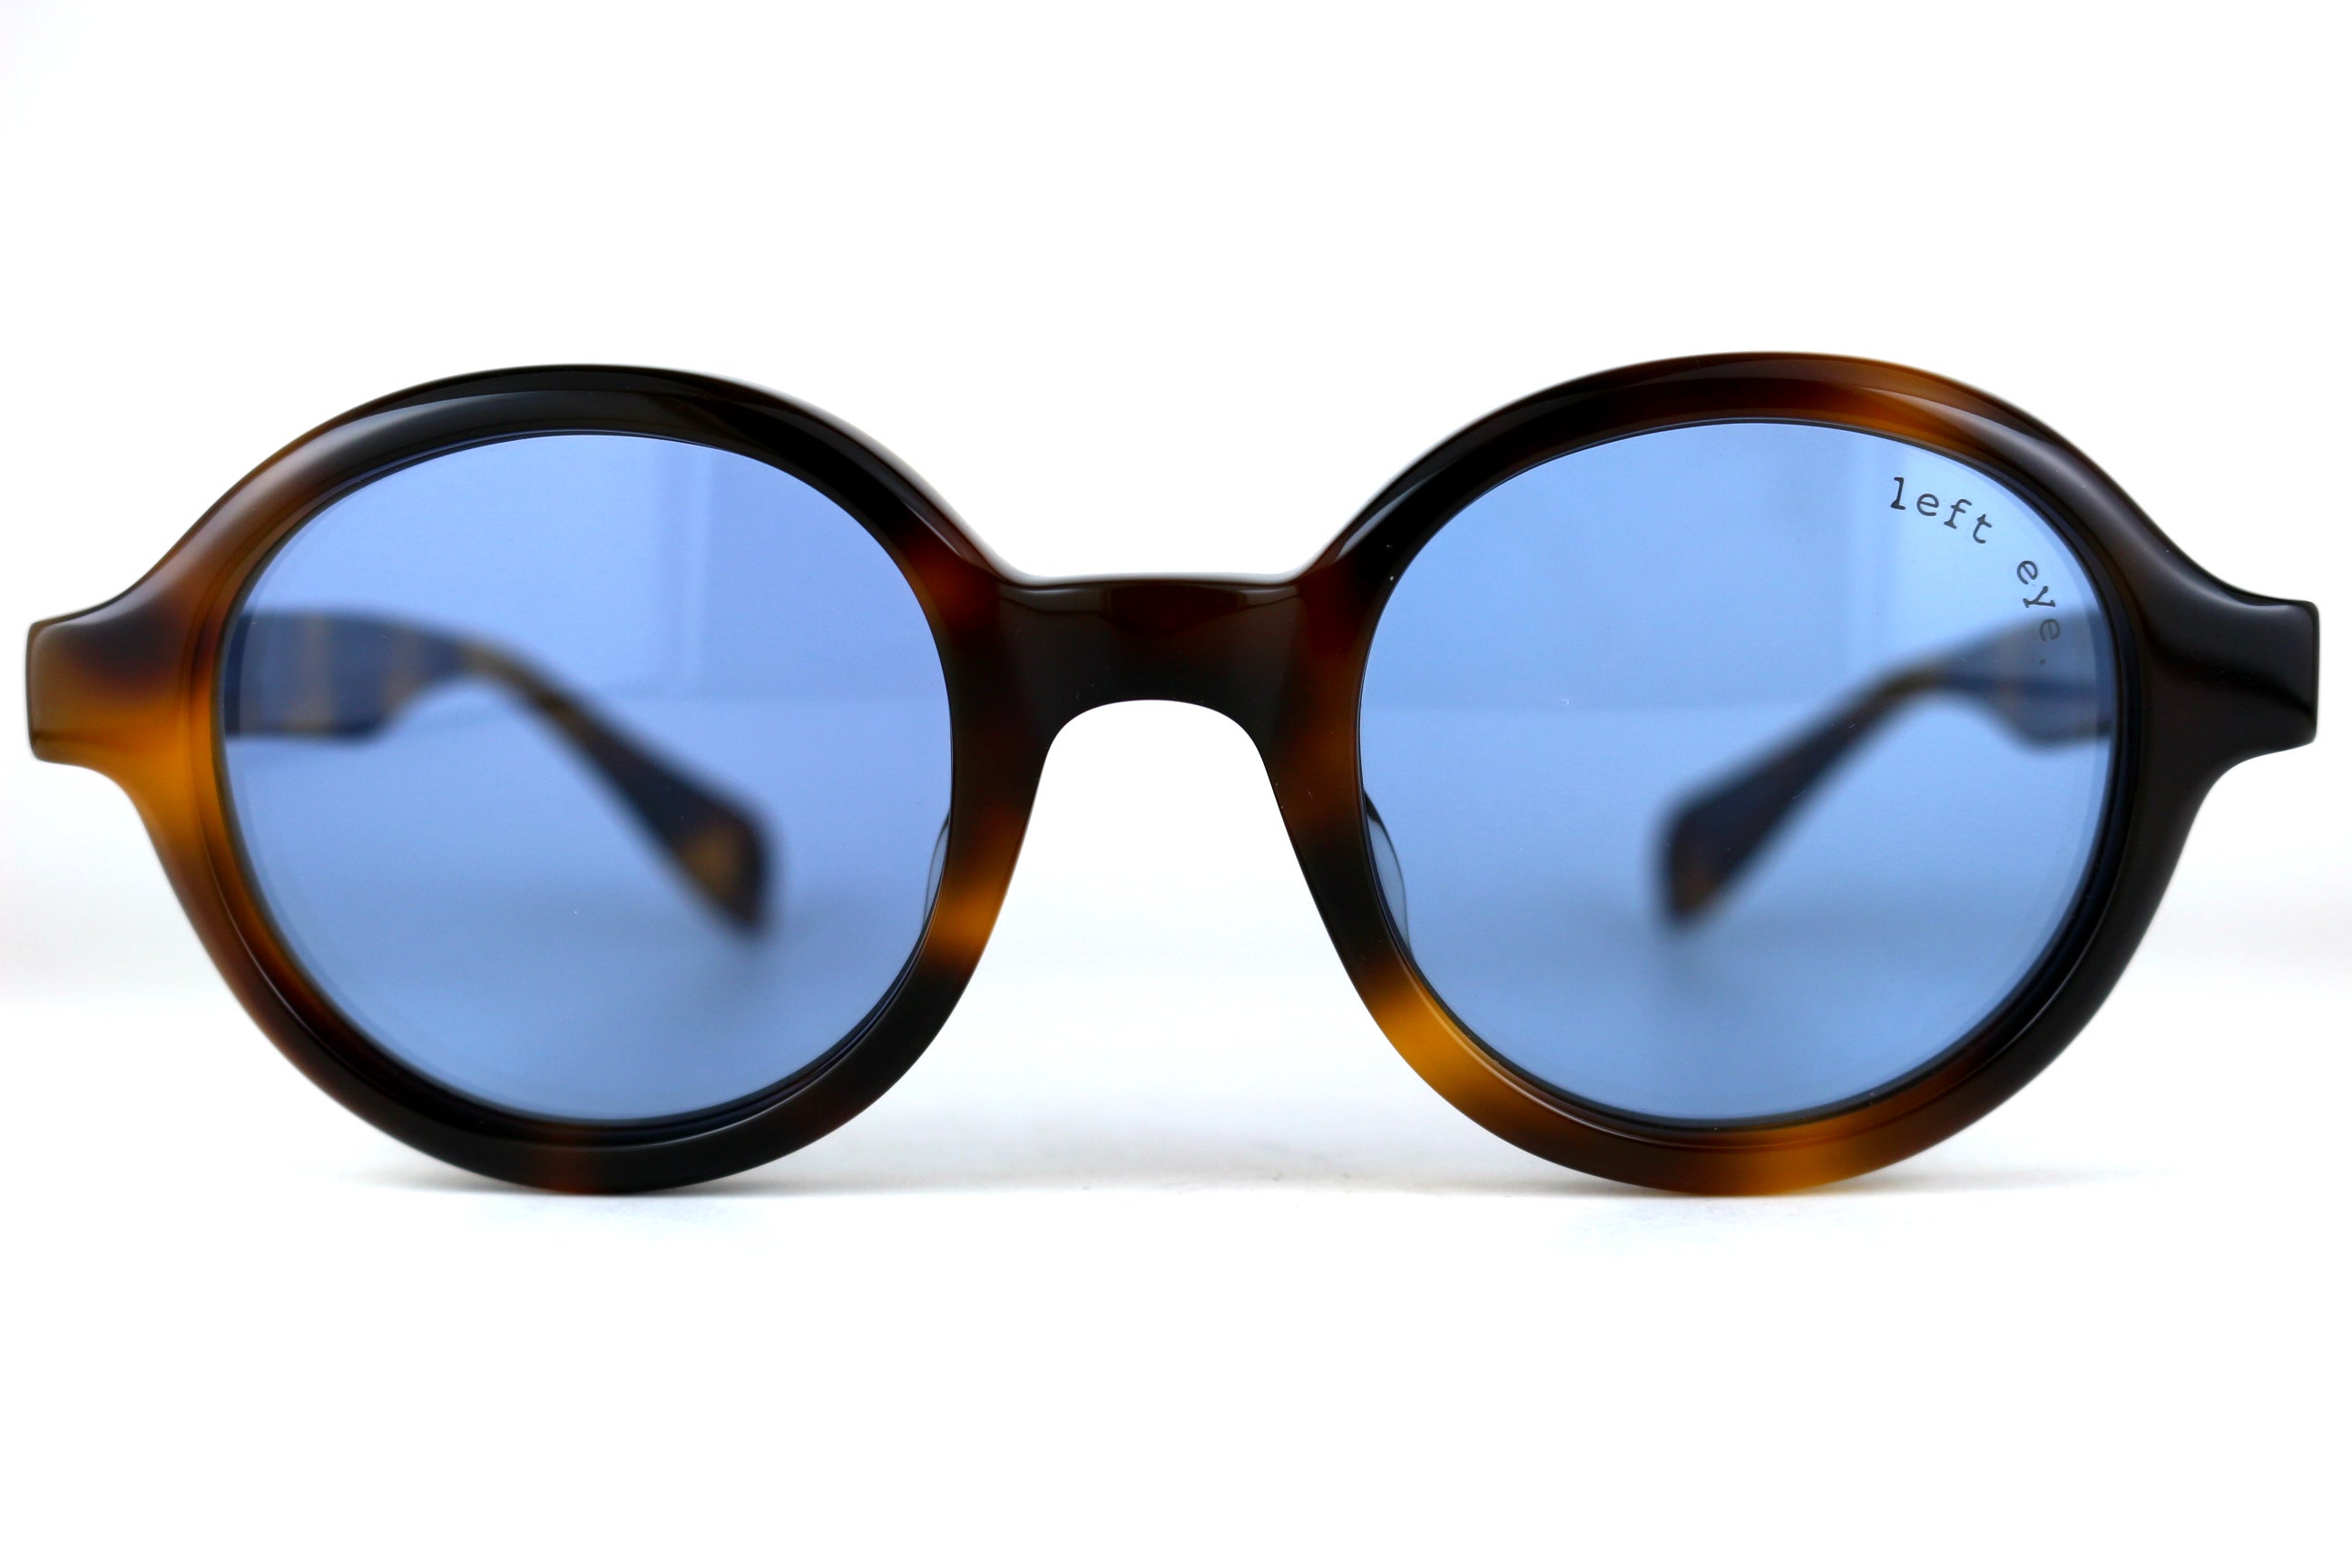 オリバーピープルズ ソロイスト s.0490 サングラス 眼鏡 メガネ